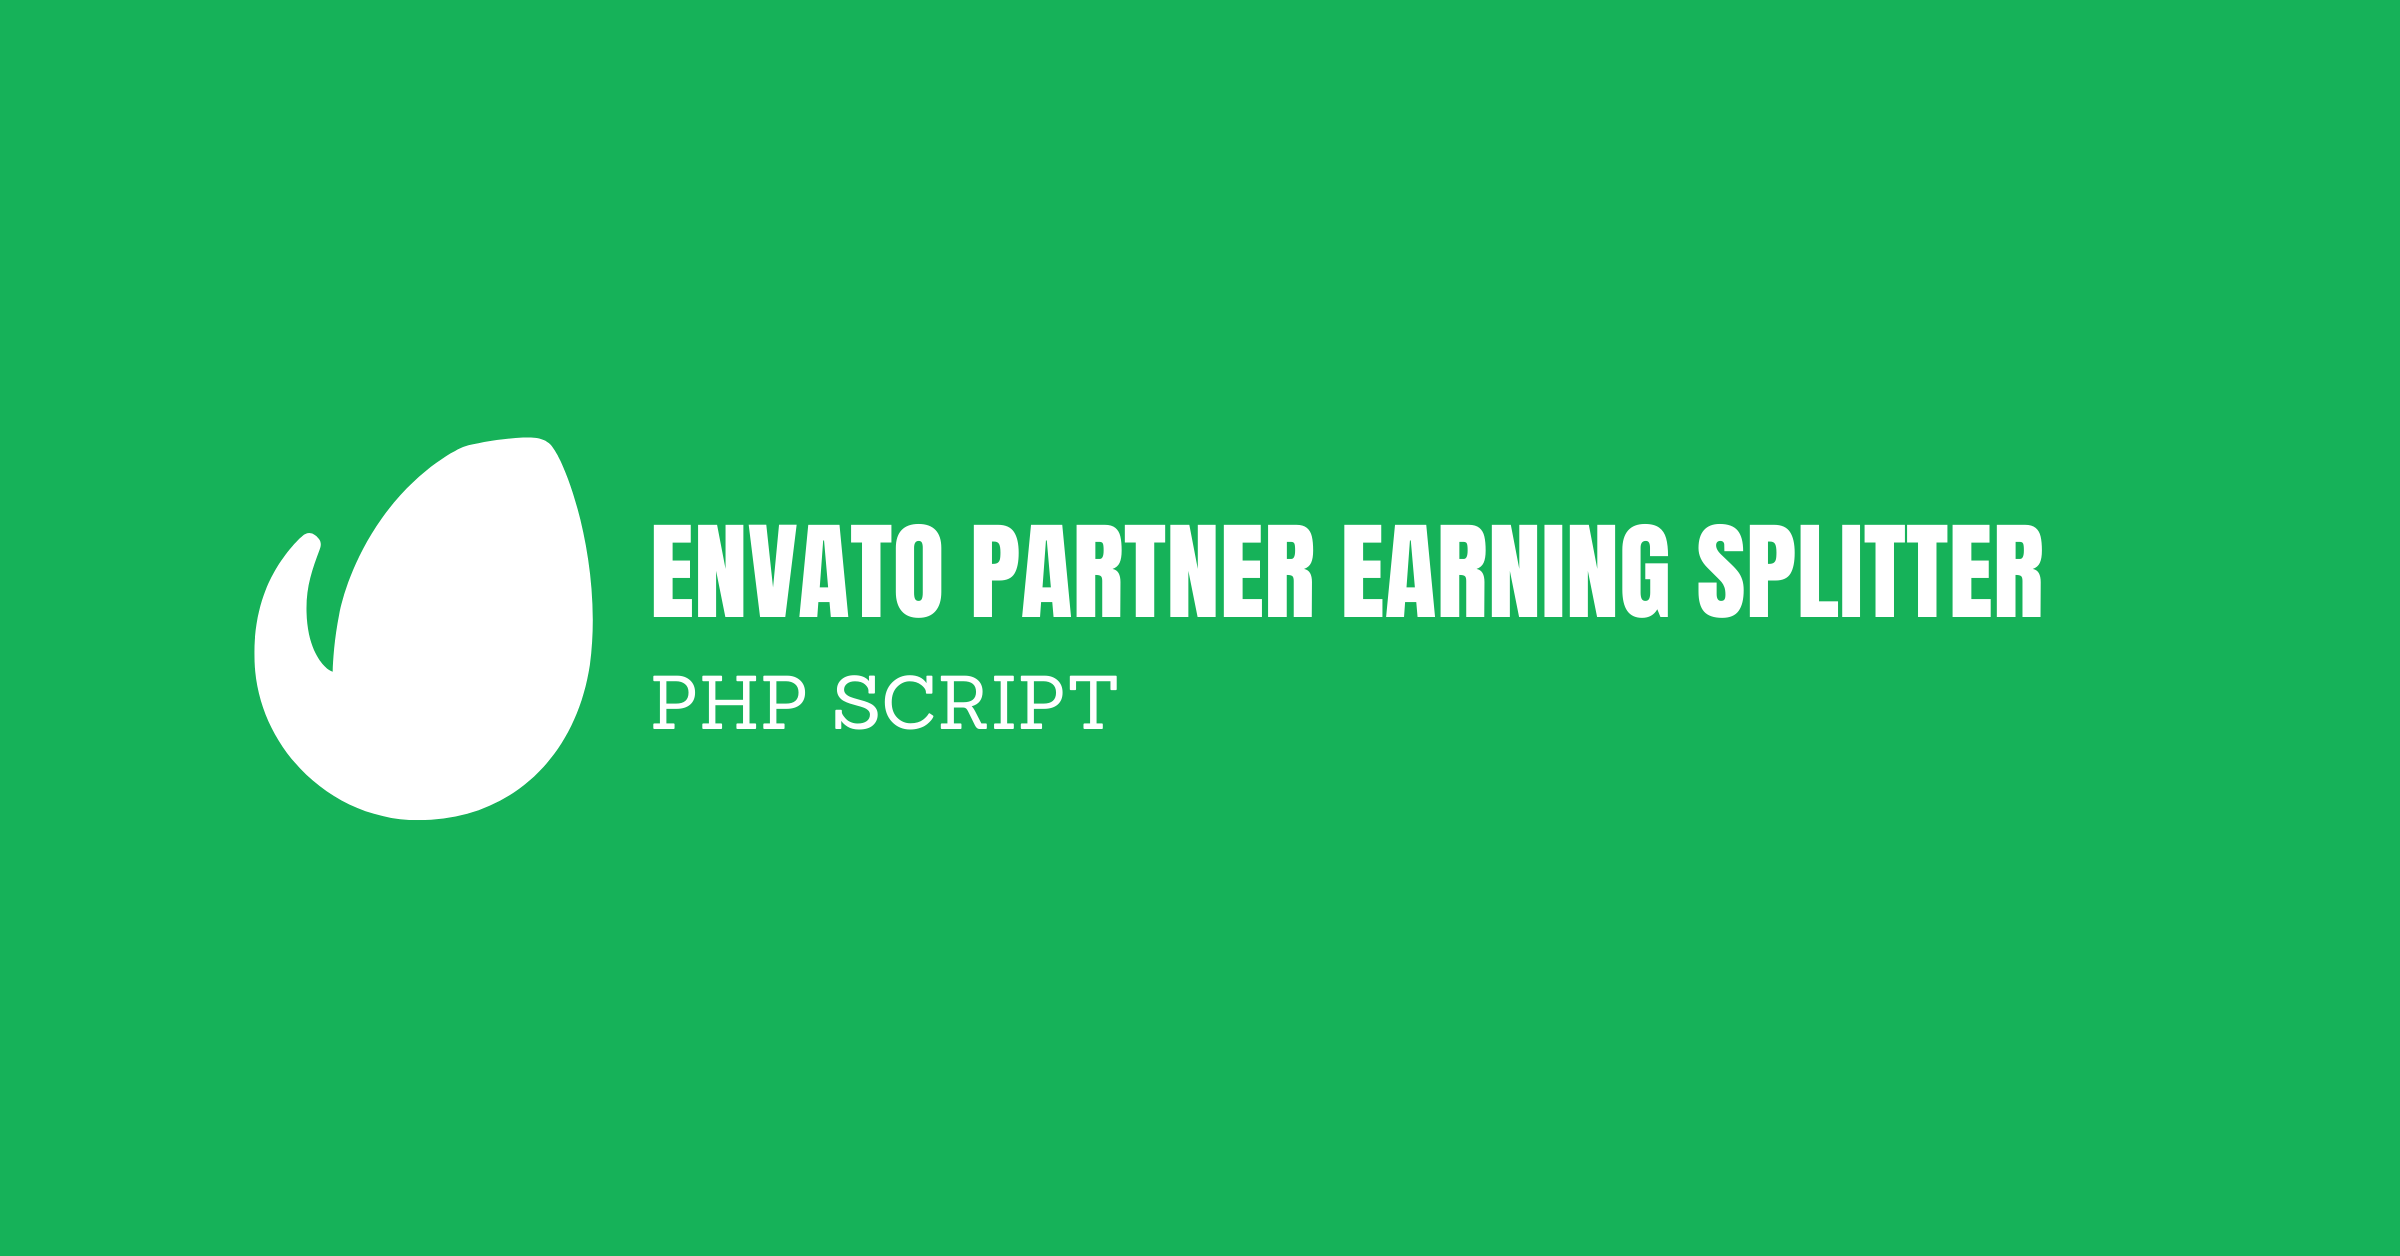 Envato Partner Earning Splitter [PHP SCRIPT]